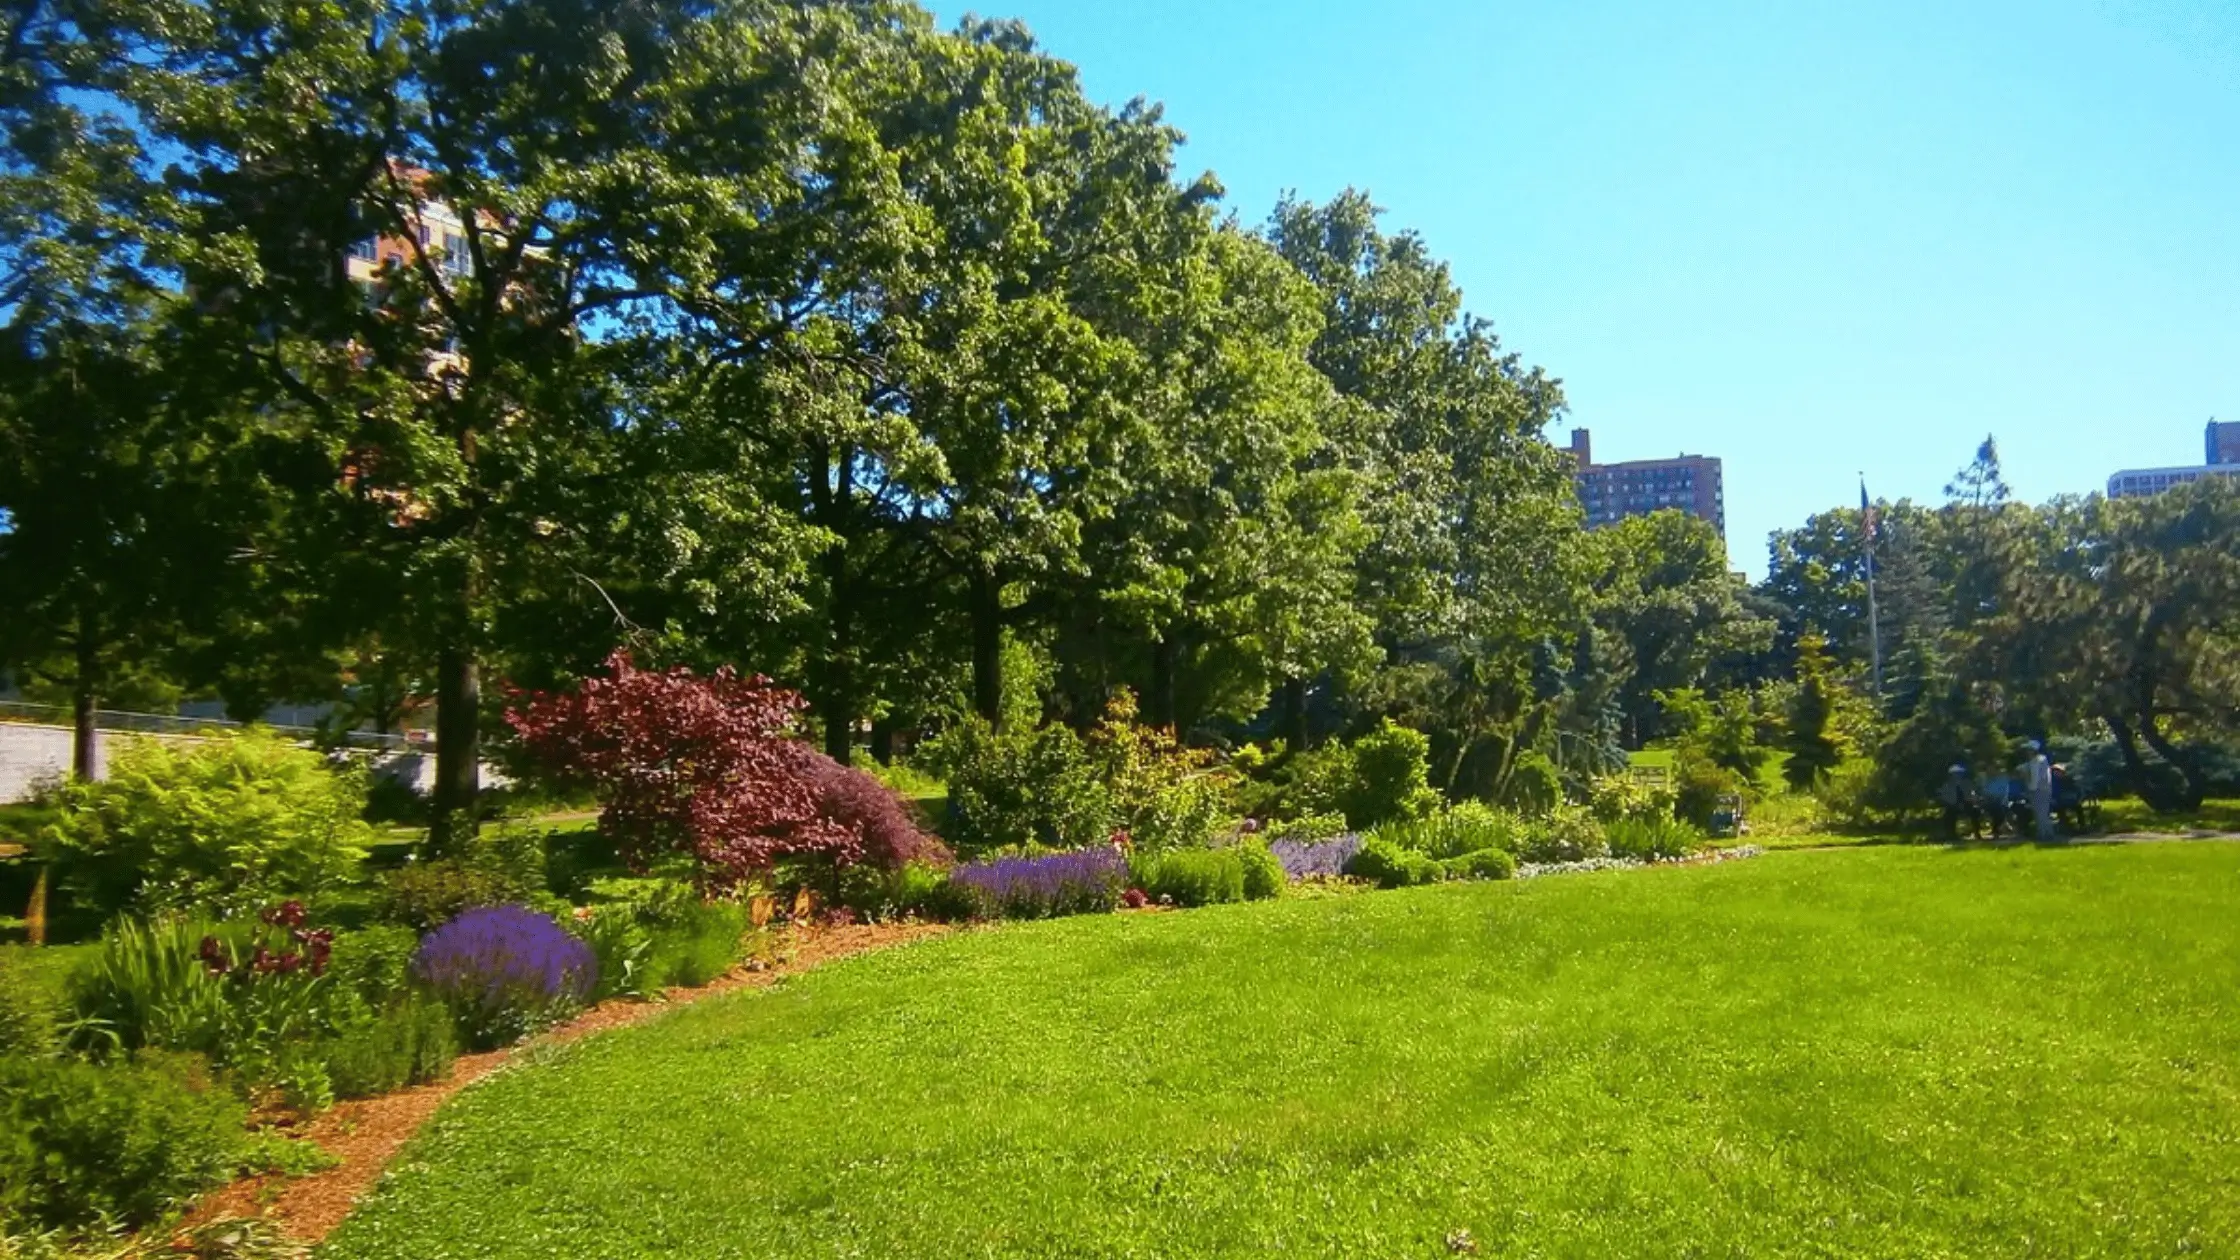 A Joyful Walk Through Queens Botanical Garden